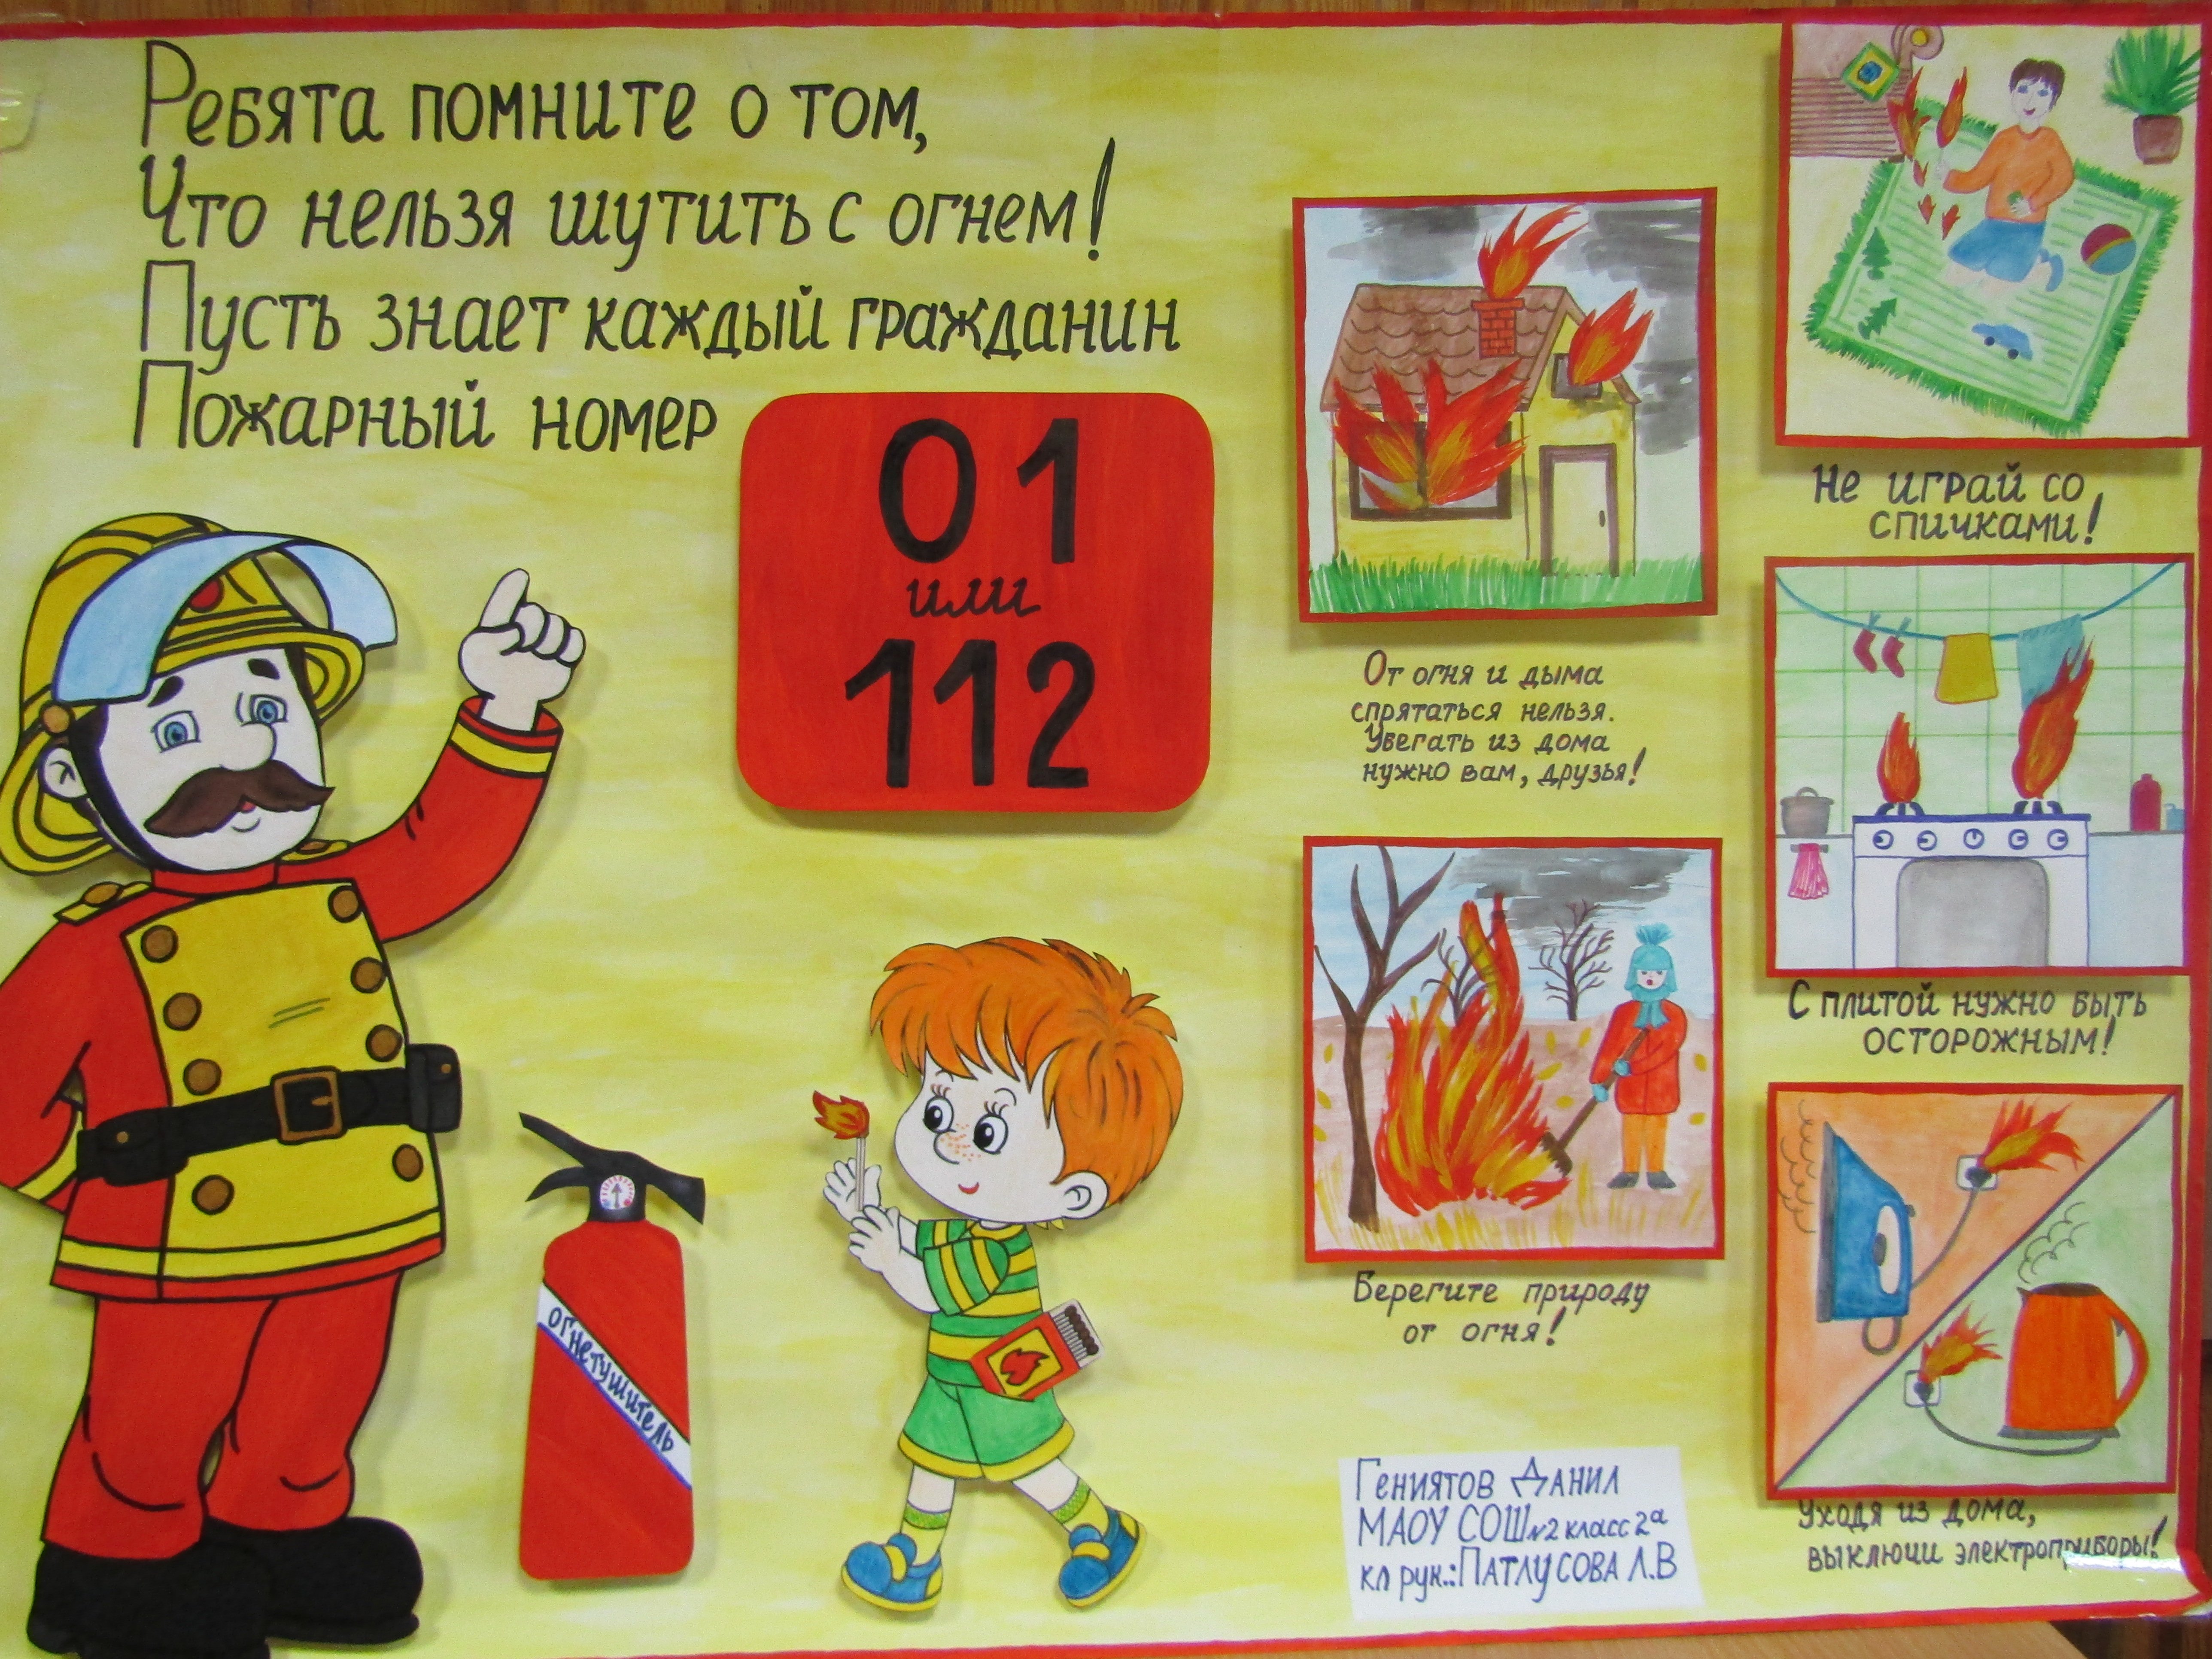 Плакат на тему пожарных. Рисунок пожарная безопасность. Плакат на тему противопожарная безопасность. Противопожарная безопасность рисунки. Плакат на тему плжарной безопасност.